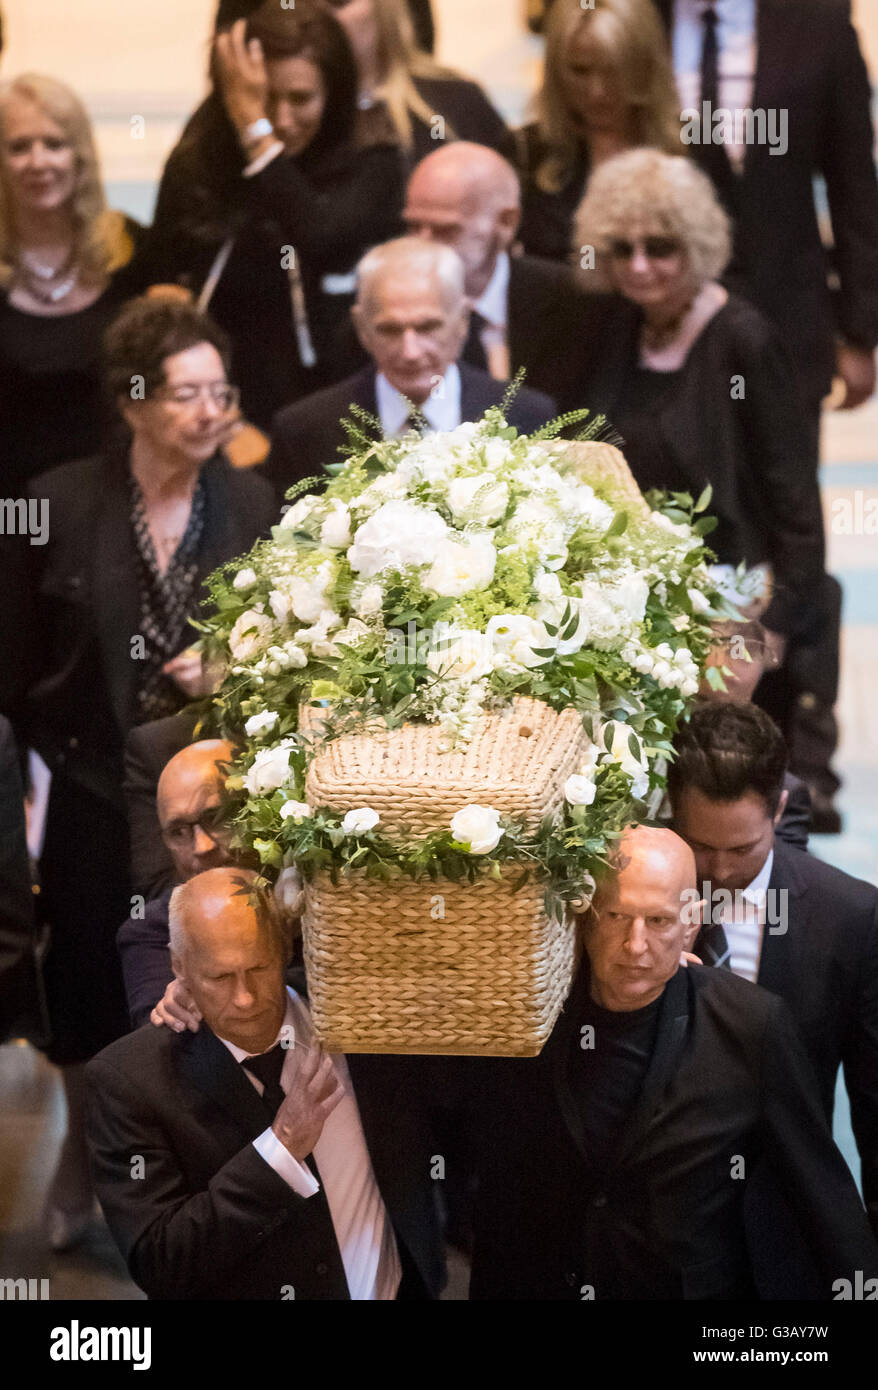 Le cercueil de l'écrivain de télévision Carla Lane s'effectue à partir de la cathédrale de Liverpool après ses funérailles. Banque D'Images